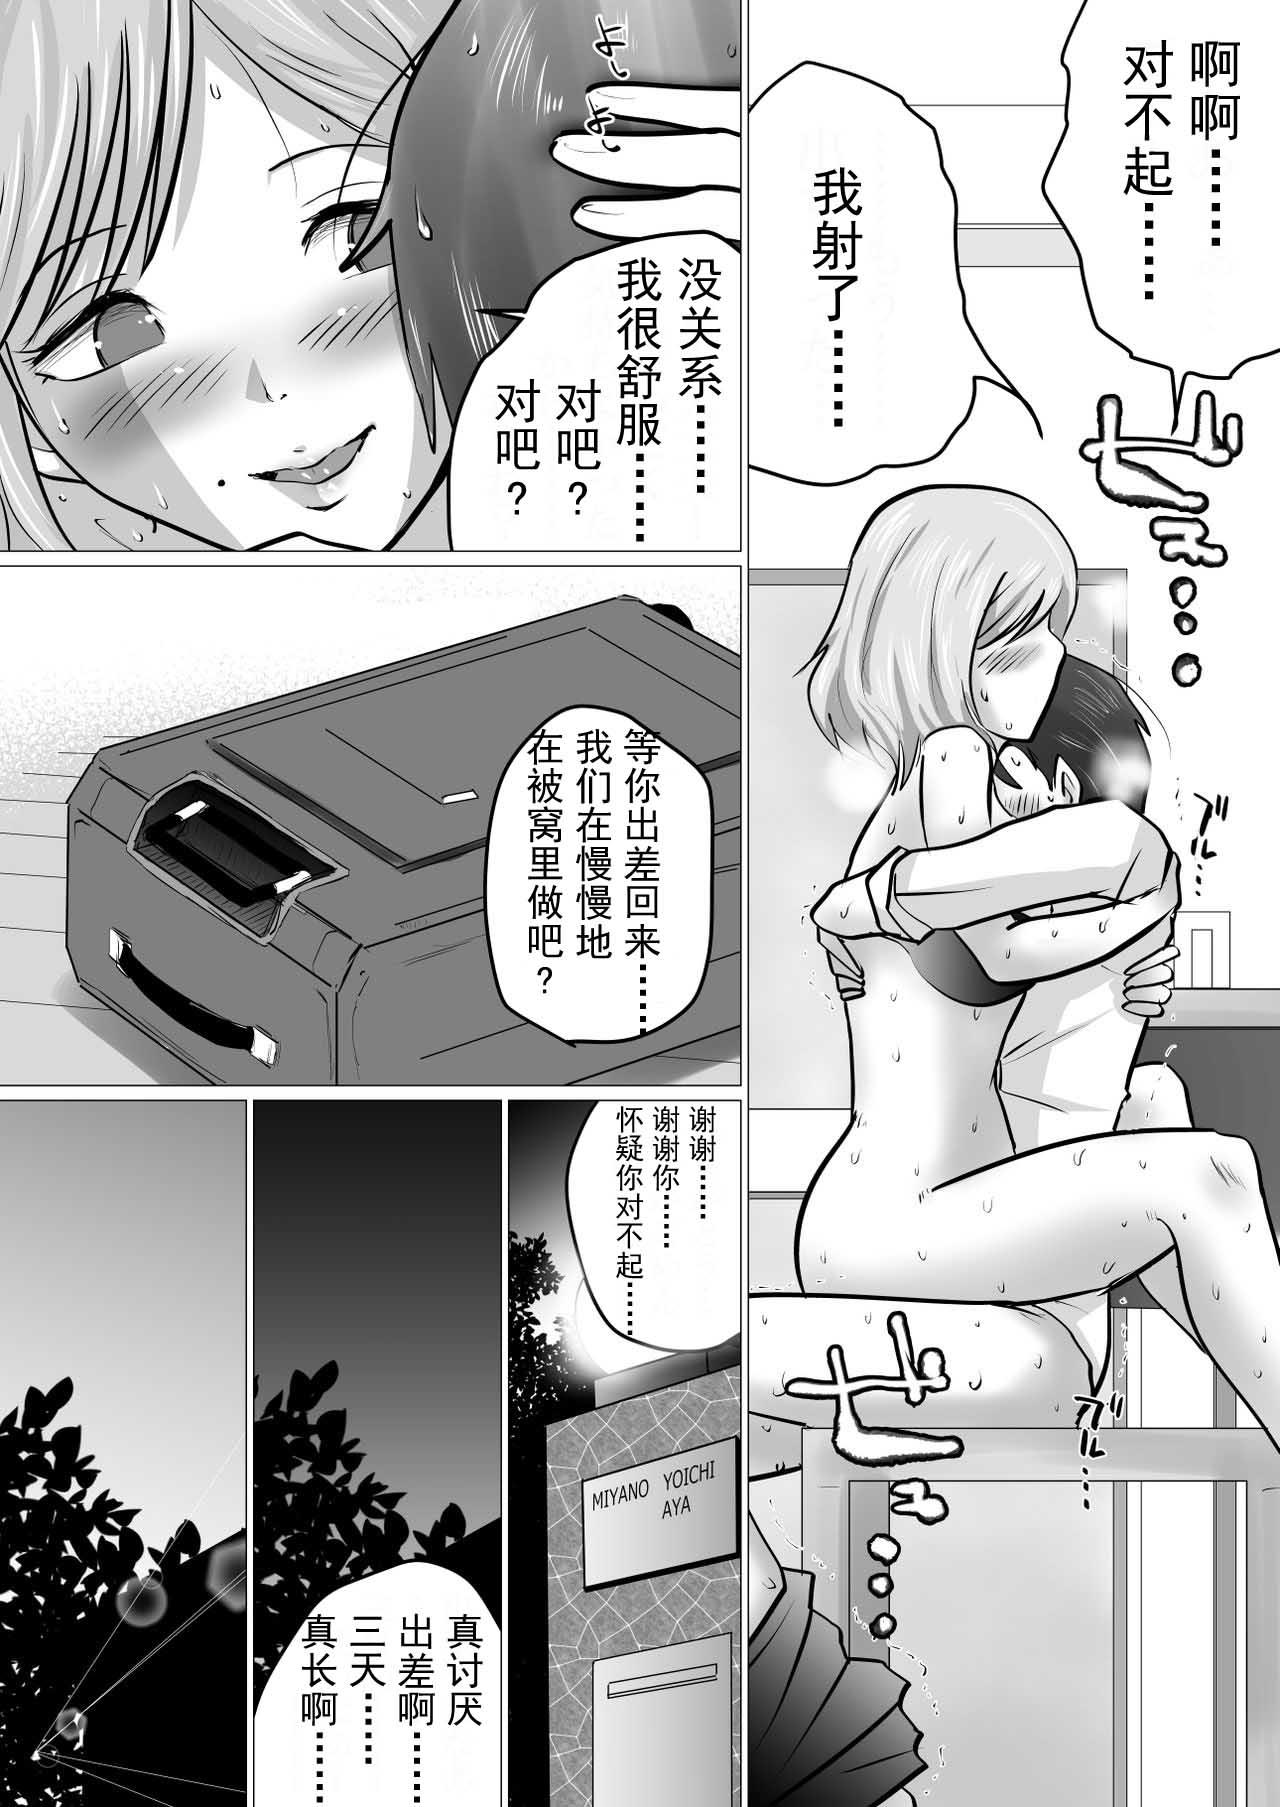 Red Head [Makoto Shiyaka] Rinjin ni Dakare Tsuzukeru to iu koto[Chinese]【不可视汉化】 - Original Asshole - Page 9